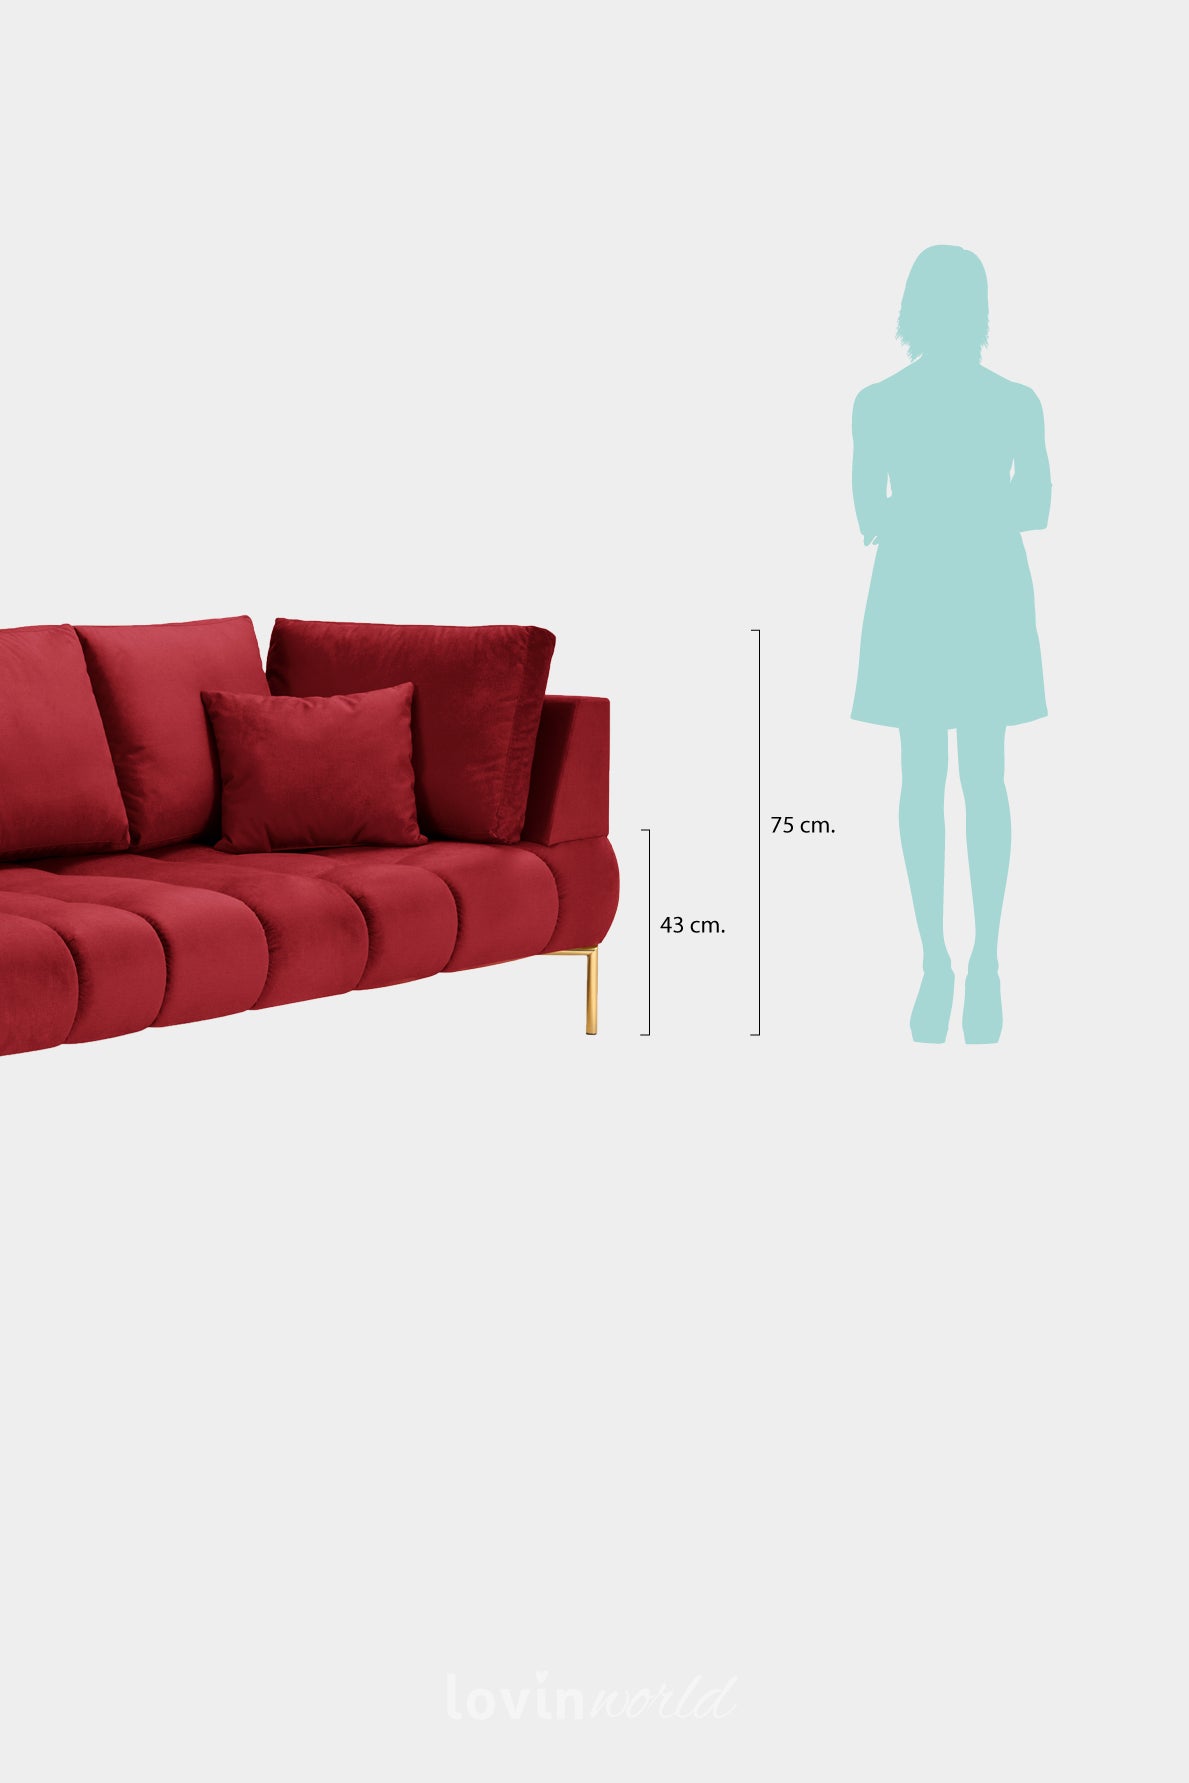 Chaise longue Malvin, in velluto rosso con gambe dorate-LovinWorld